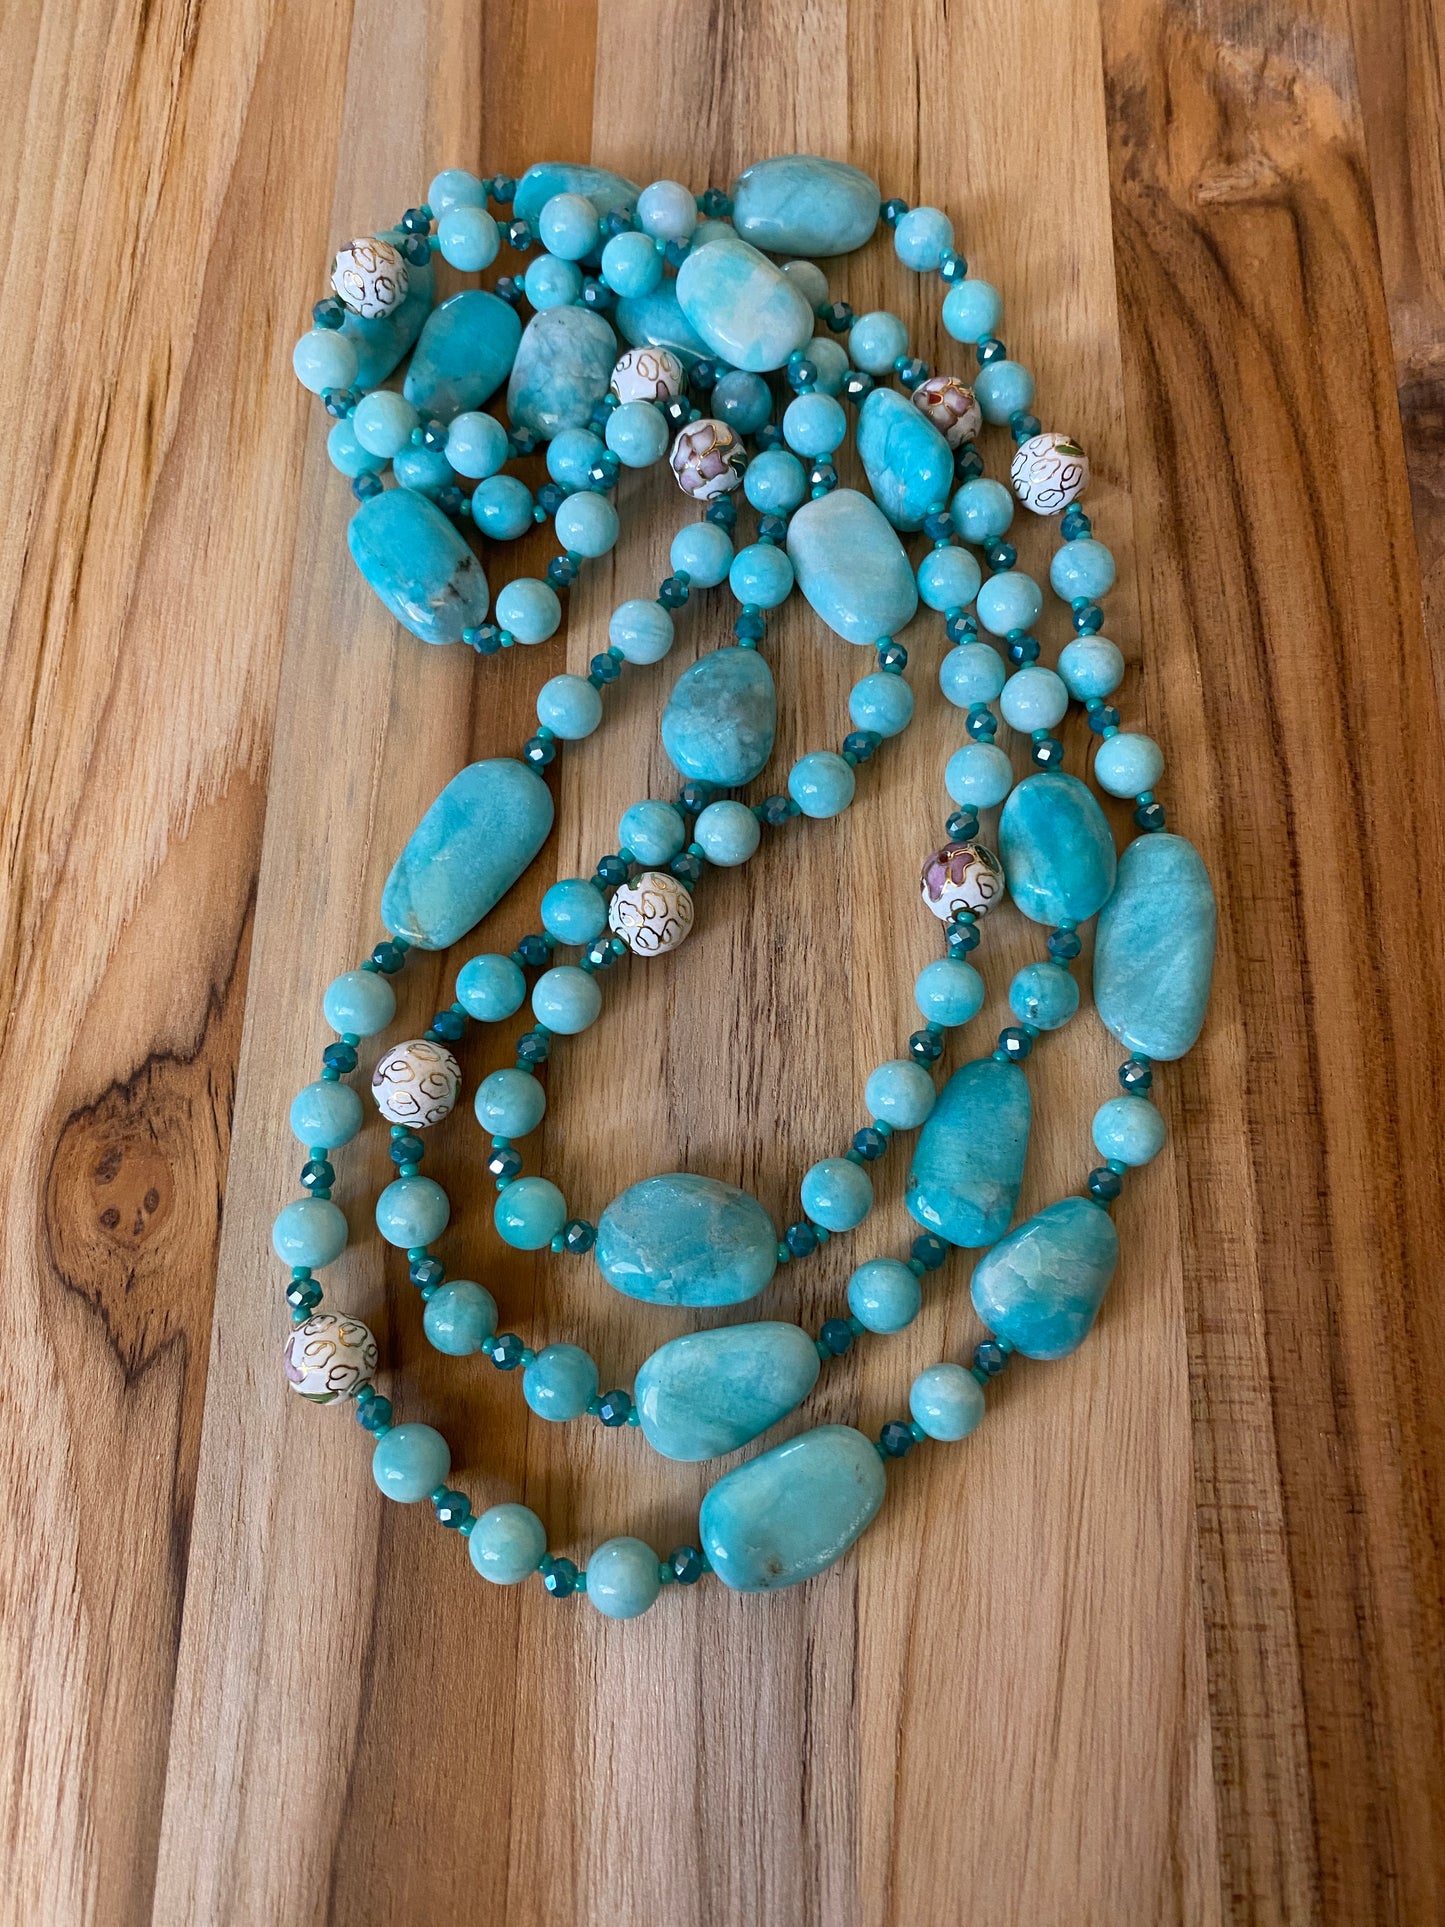 60" Extra Long Aqua Blue Beaded Amazonite Wraparound Necklace with Cloisonne & Crystal Beads